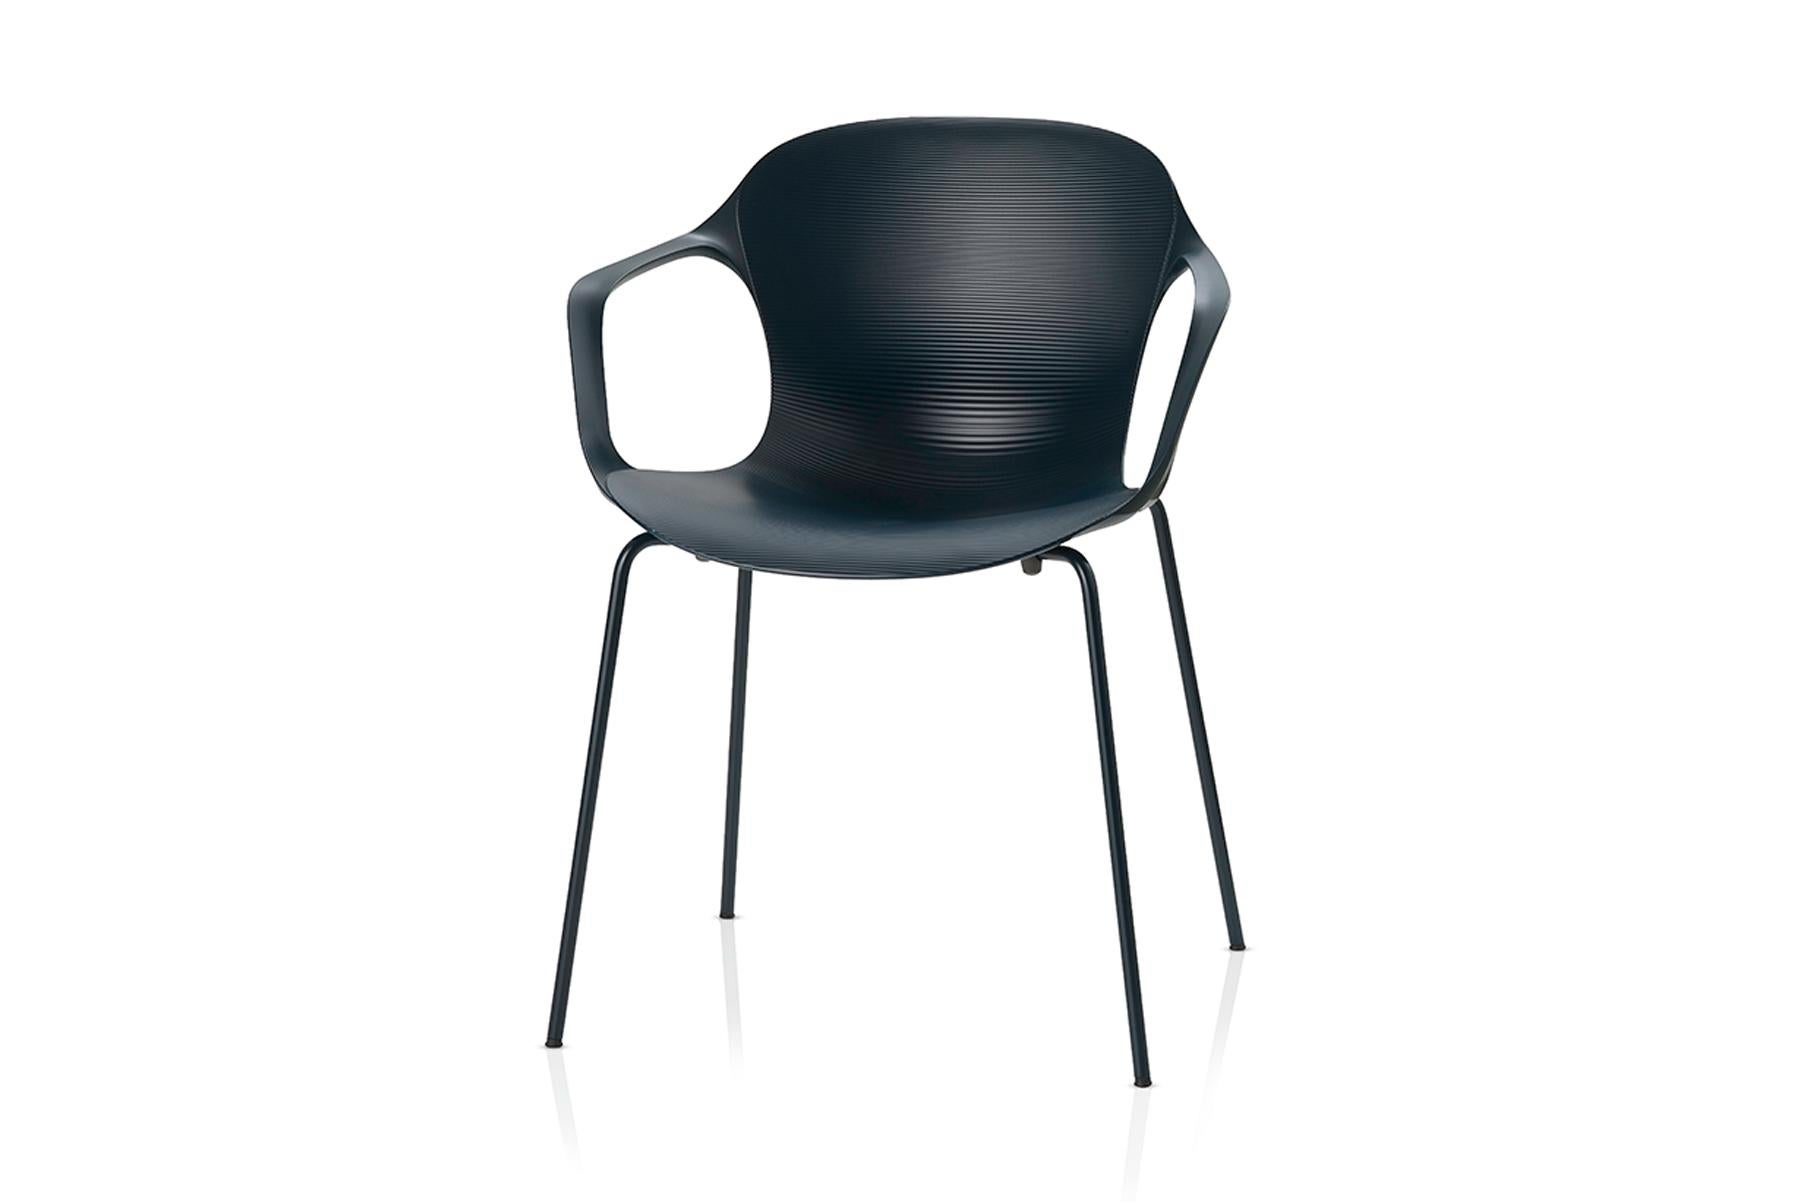 Le designer danois Kasper Salto a conçu la chaise NAP pour Fritz Hansen. Avec sa forme curviligne, la chaise NAP est féminine et élégante. Les contours de la coque en nylon s'adaptent naturellement à la forme du corps humain et les vagues texturées